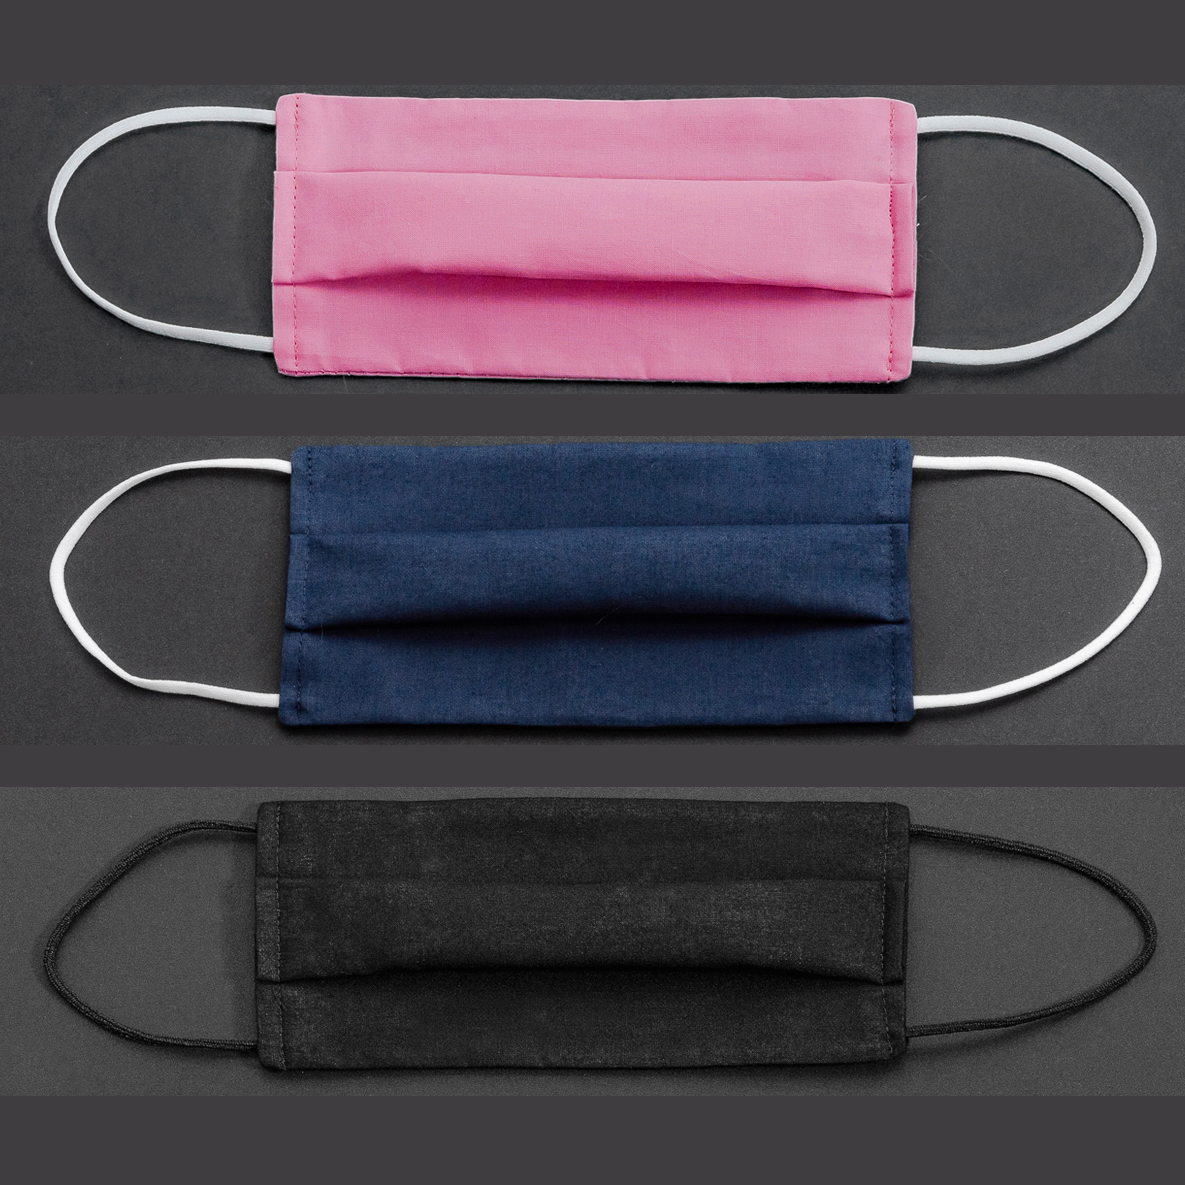 Empa-geprüfte Community-Maske Baumwolle/Polyester uni in 3 Varianten - 1 Stück